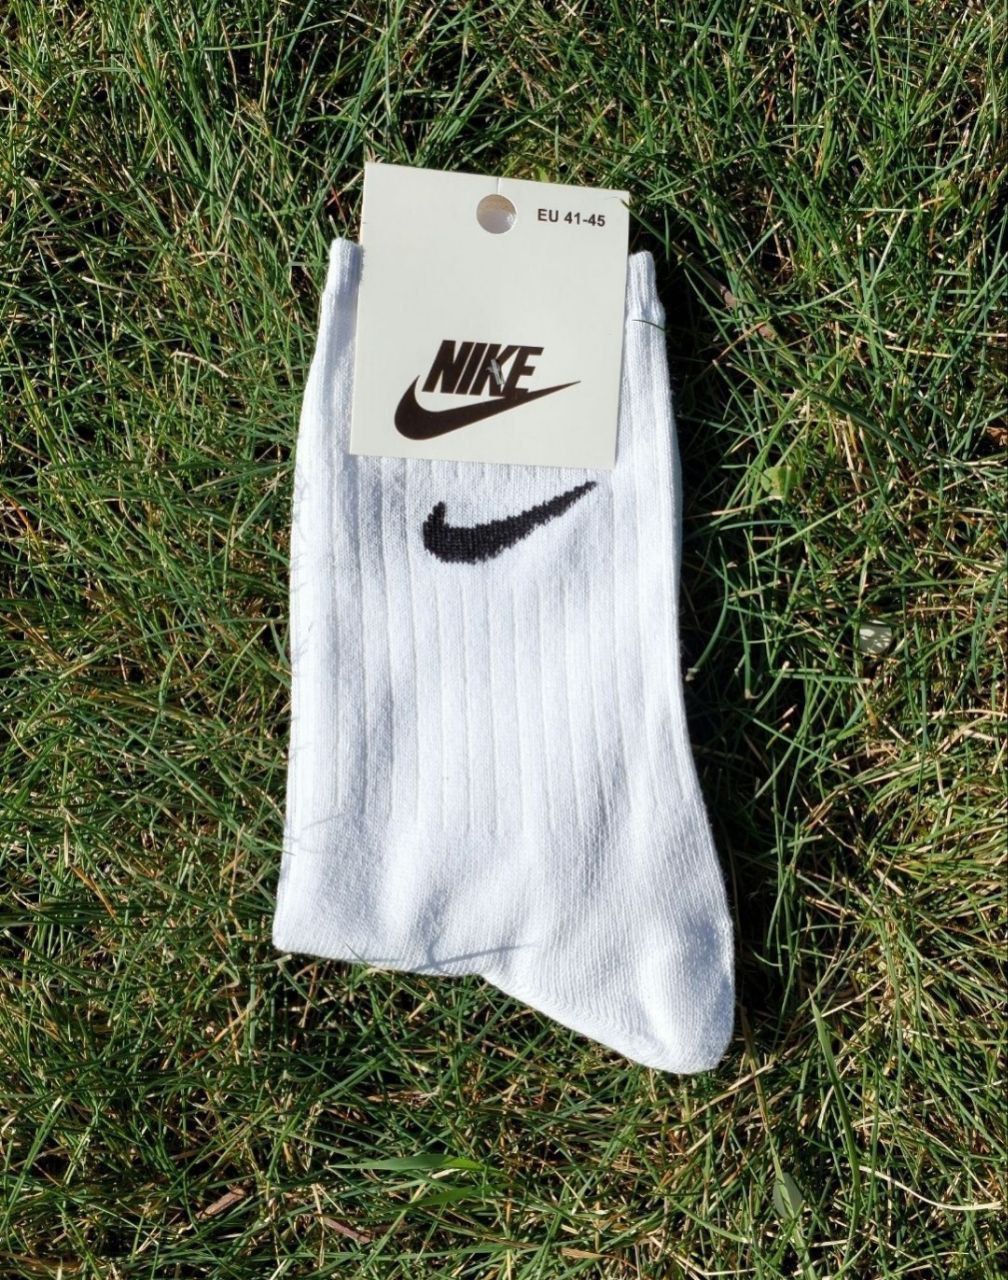 Шкарпетки Nikе білі, носки найк белые

-Якість 80%бавовна;
17%поліамід